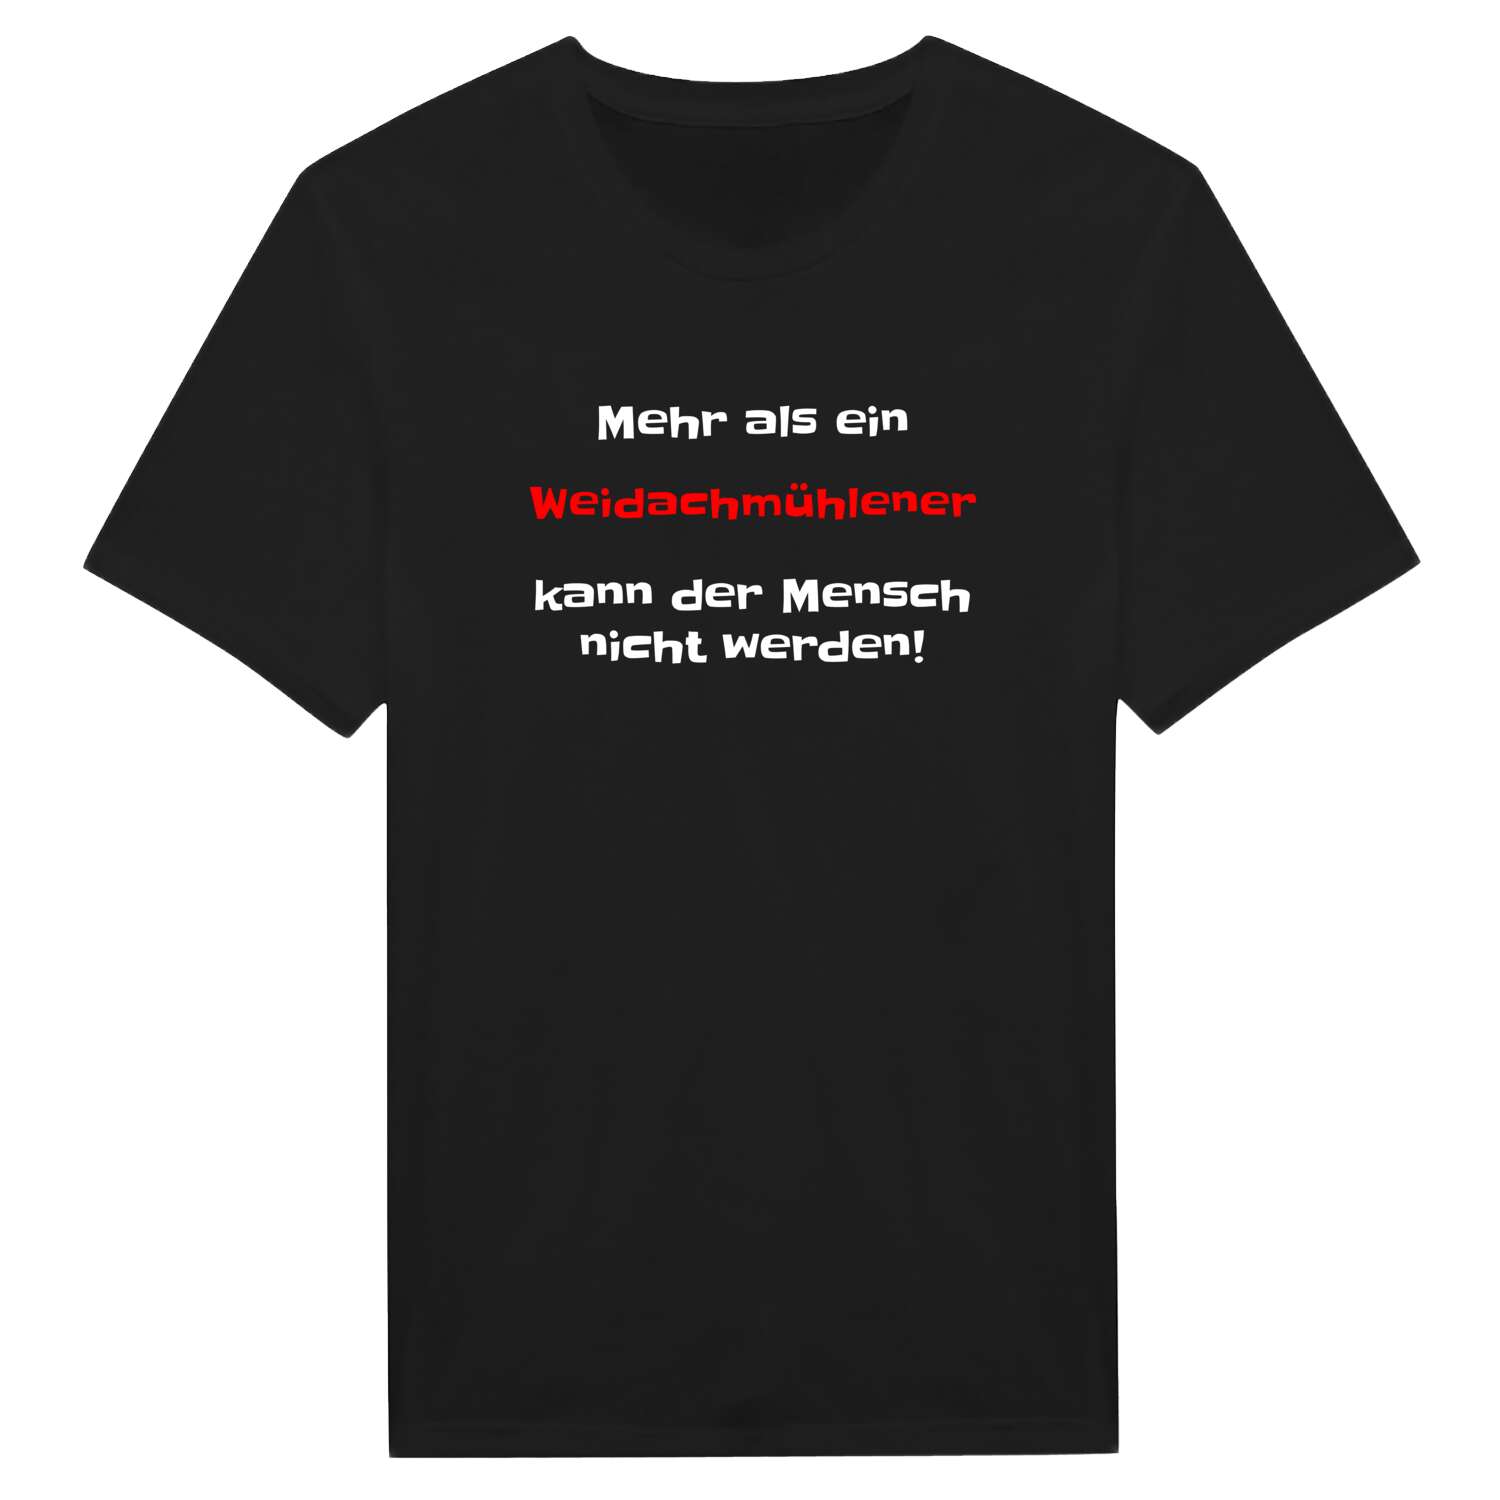 Weidachmühle T-Shirt »Mehr als ein«